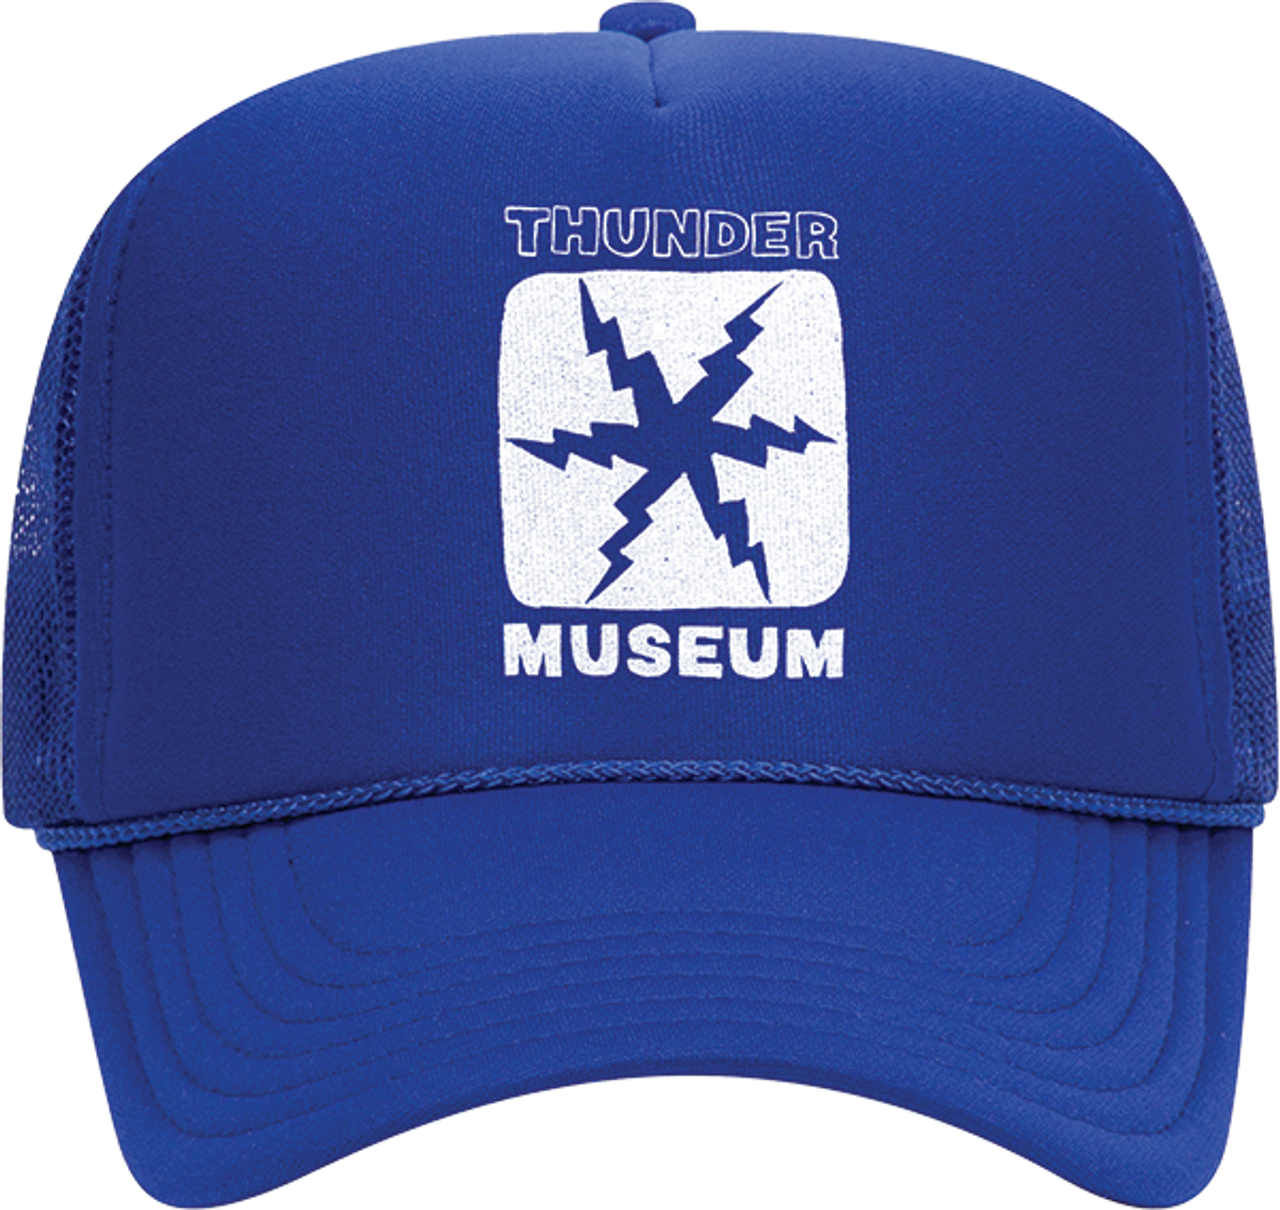 thunder thunder x museum trucker hat